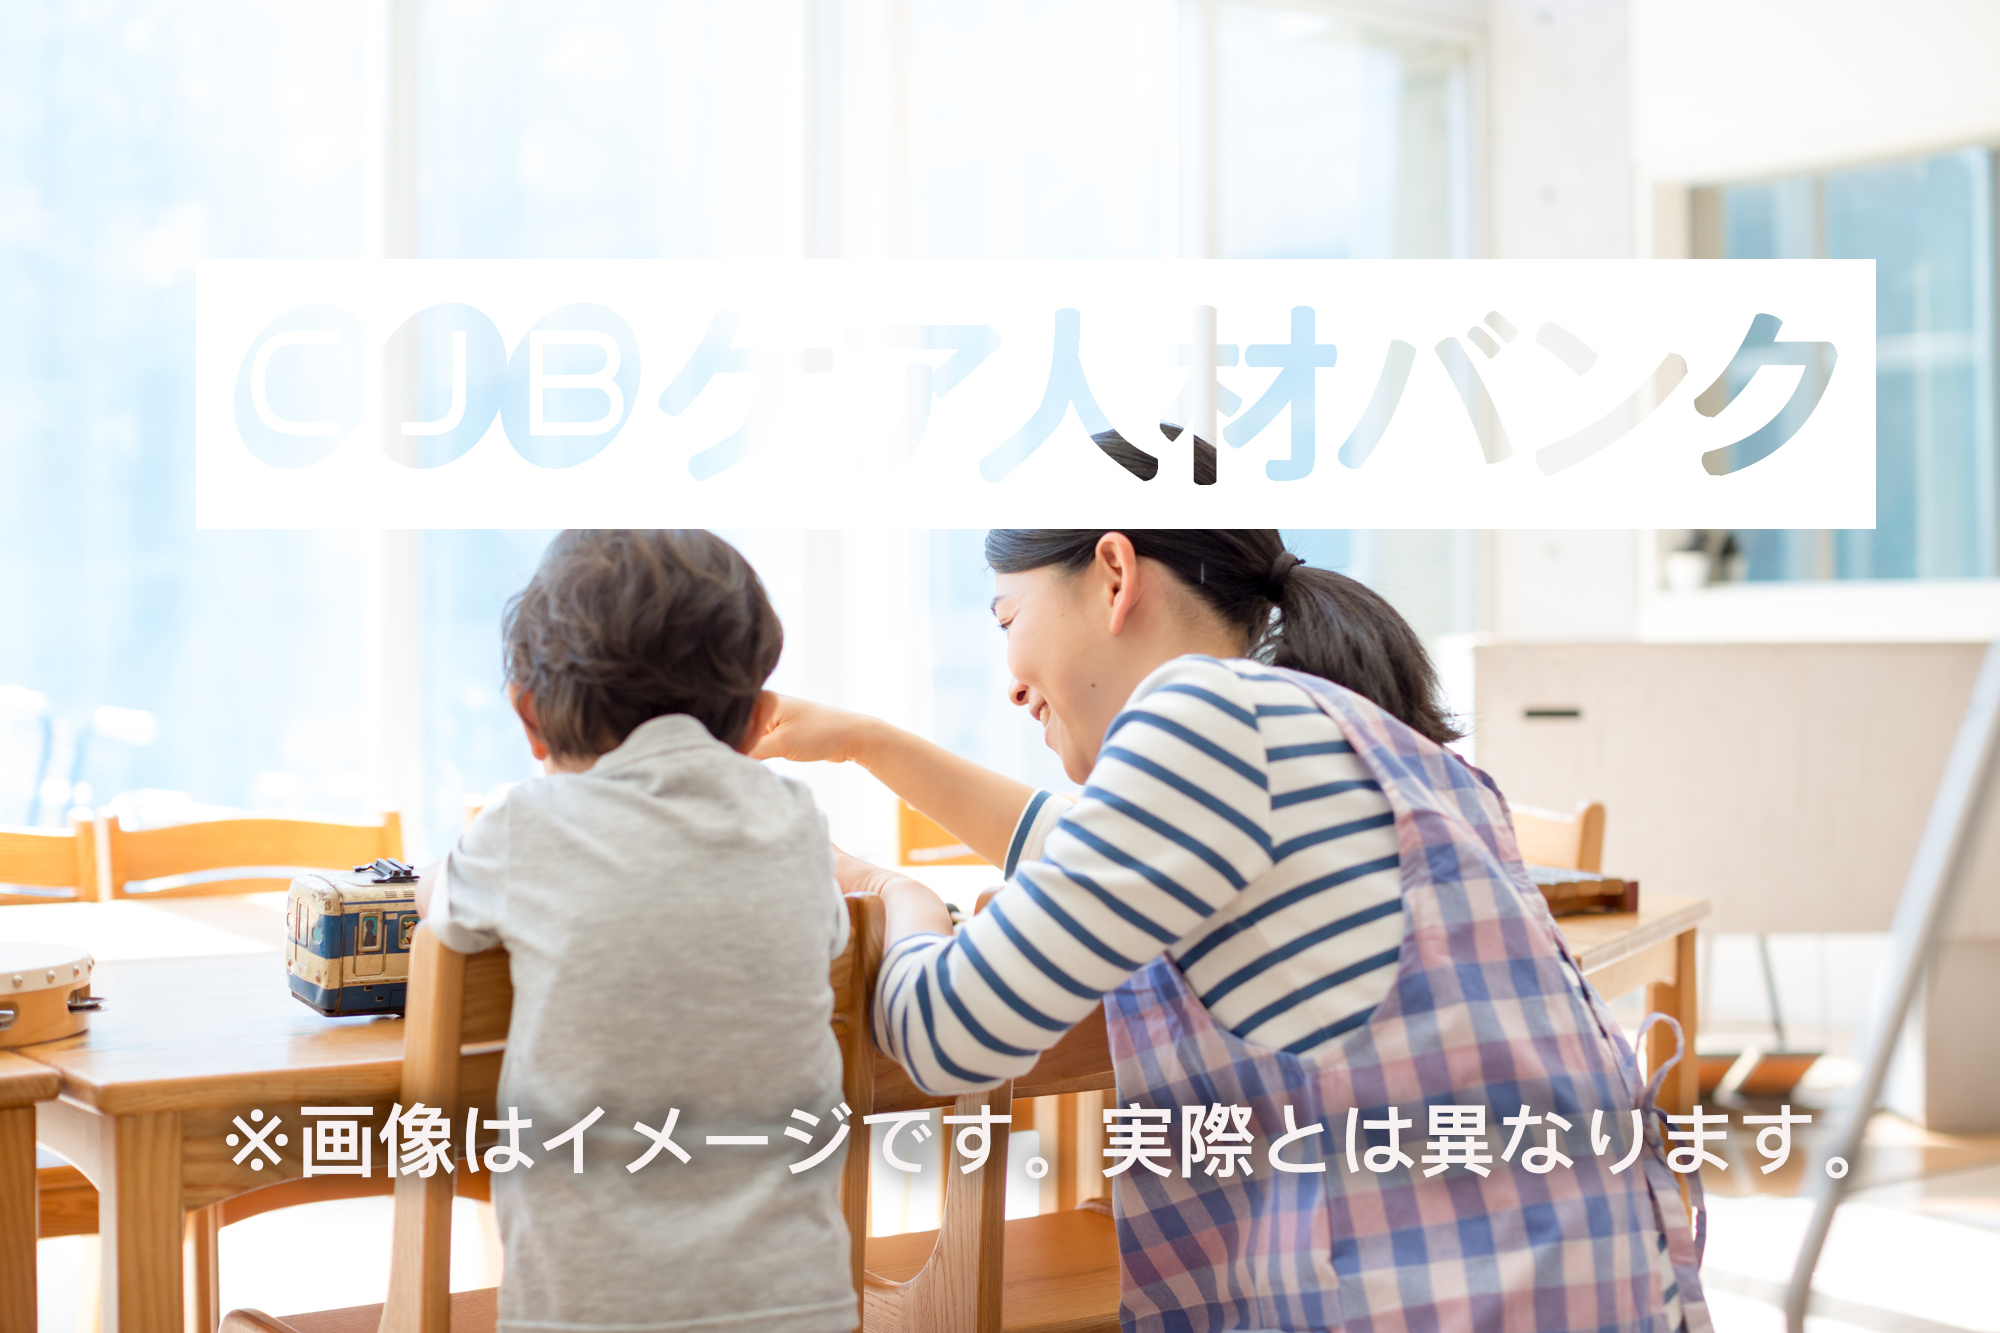 こぱんはうすさくら横浜鶴見教室 のイメージ画像